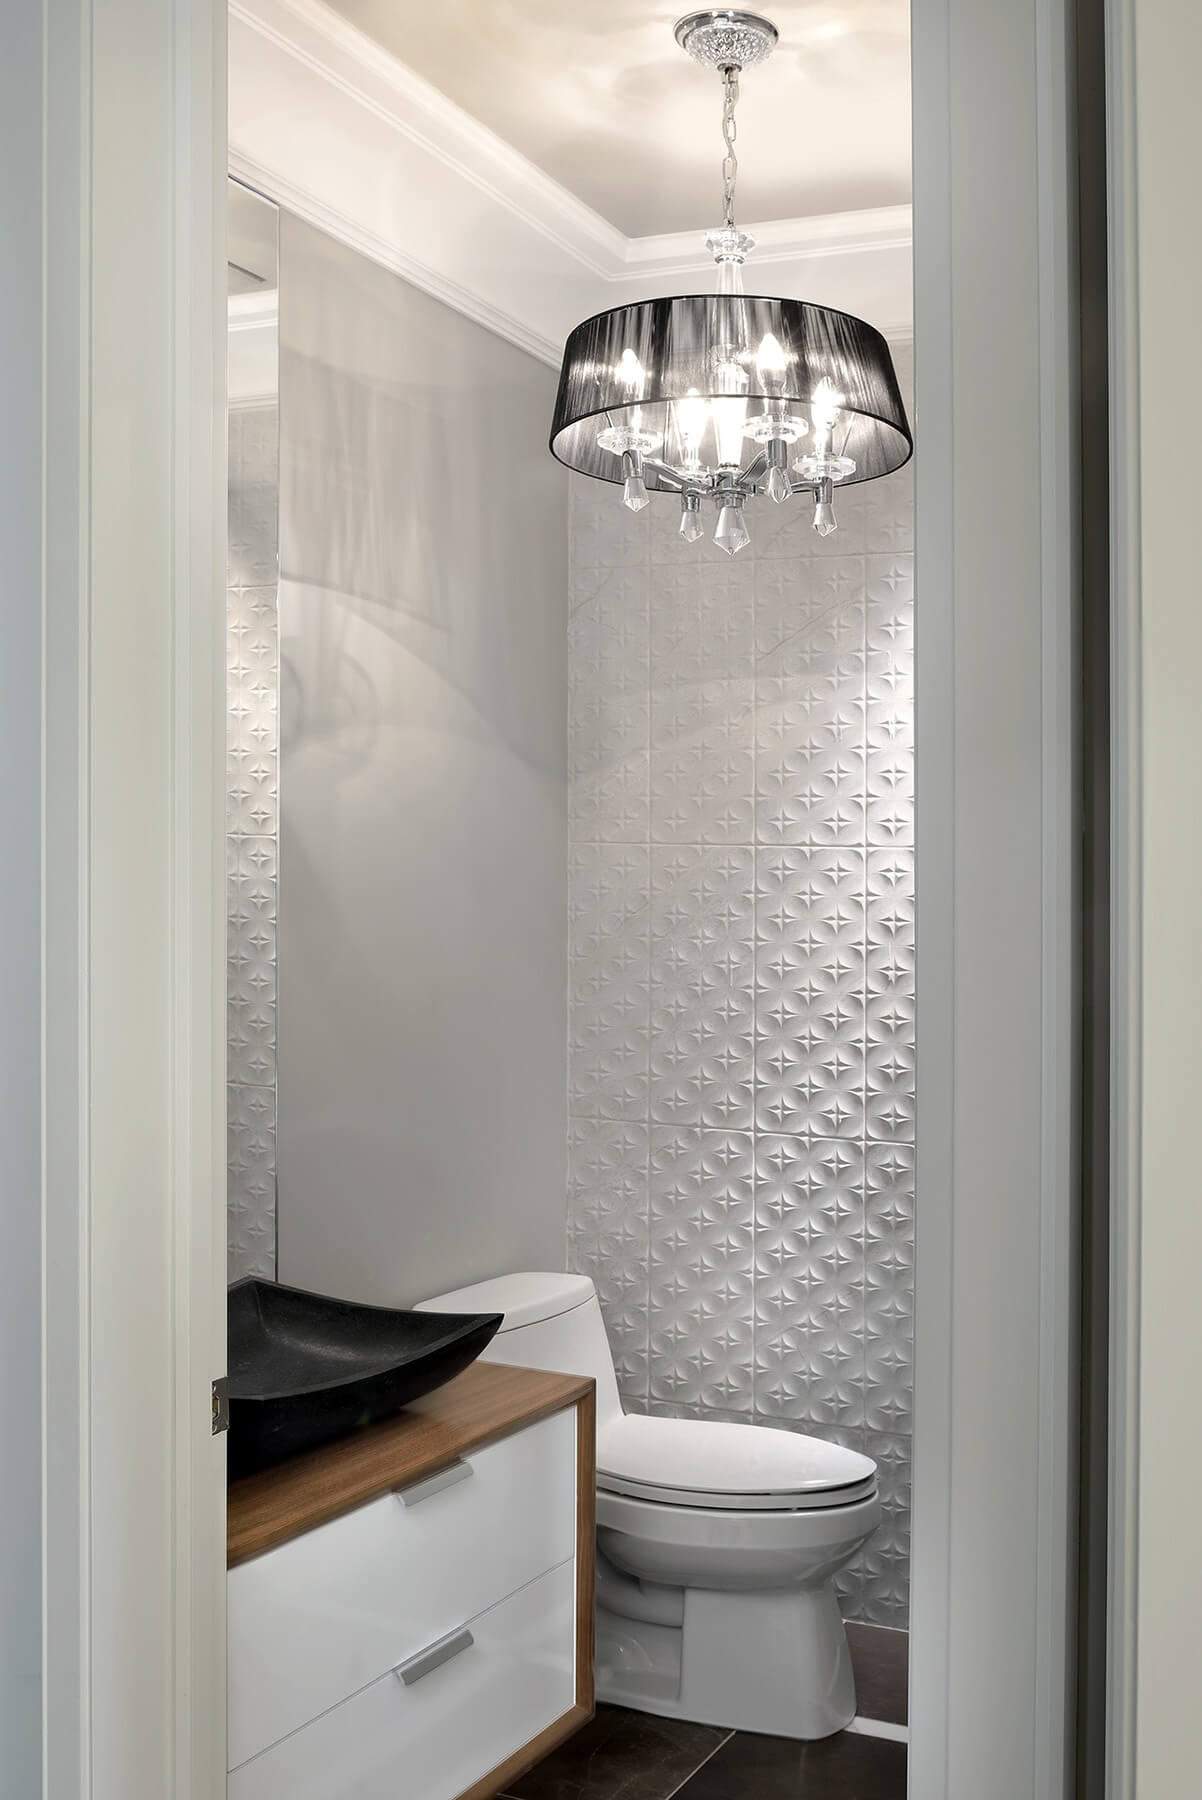 半浴室的特色是这种独特的白色纹理瓷砖墙，以及天然木材包裹的漂浮梳妆台和黑色容器水槽。